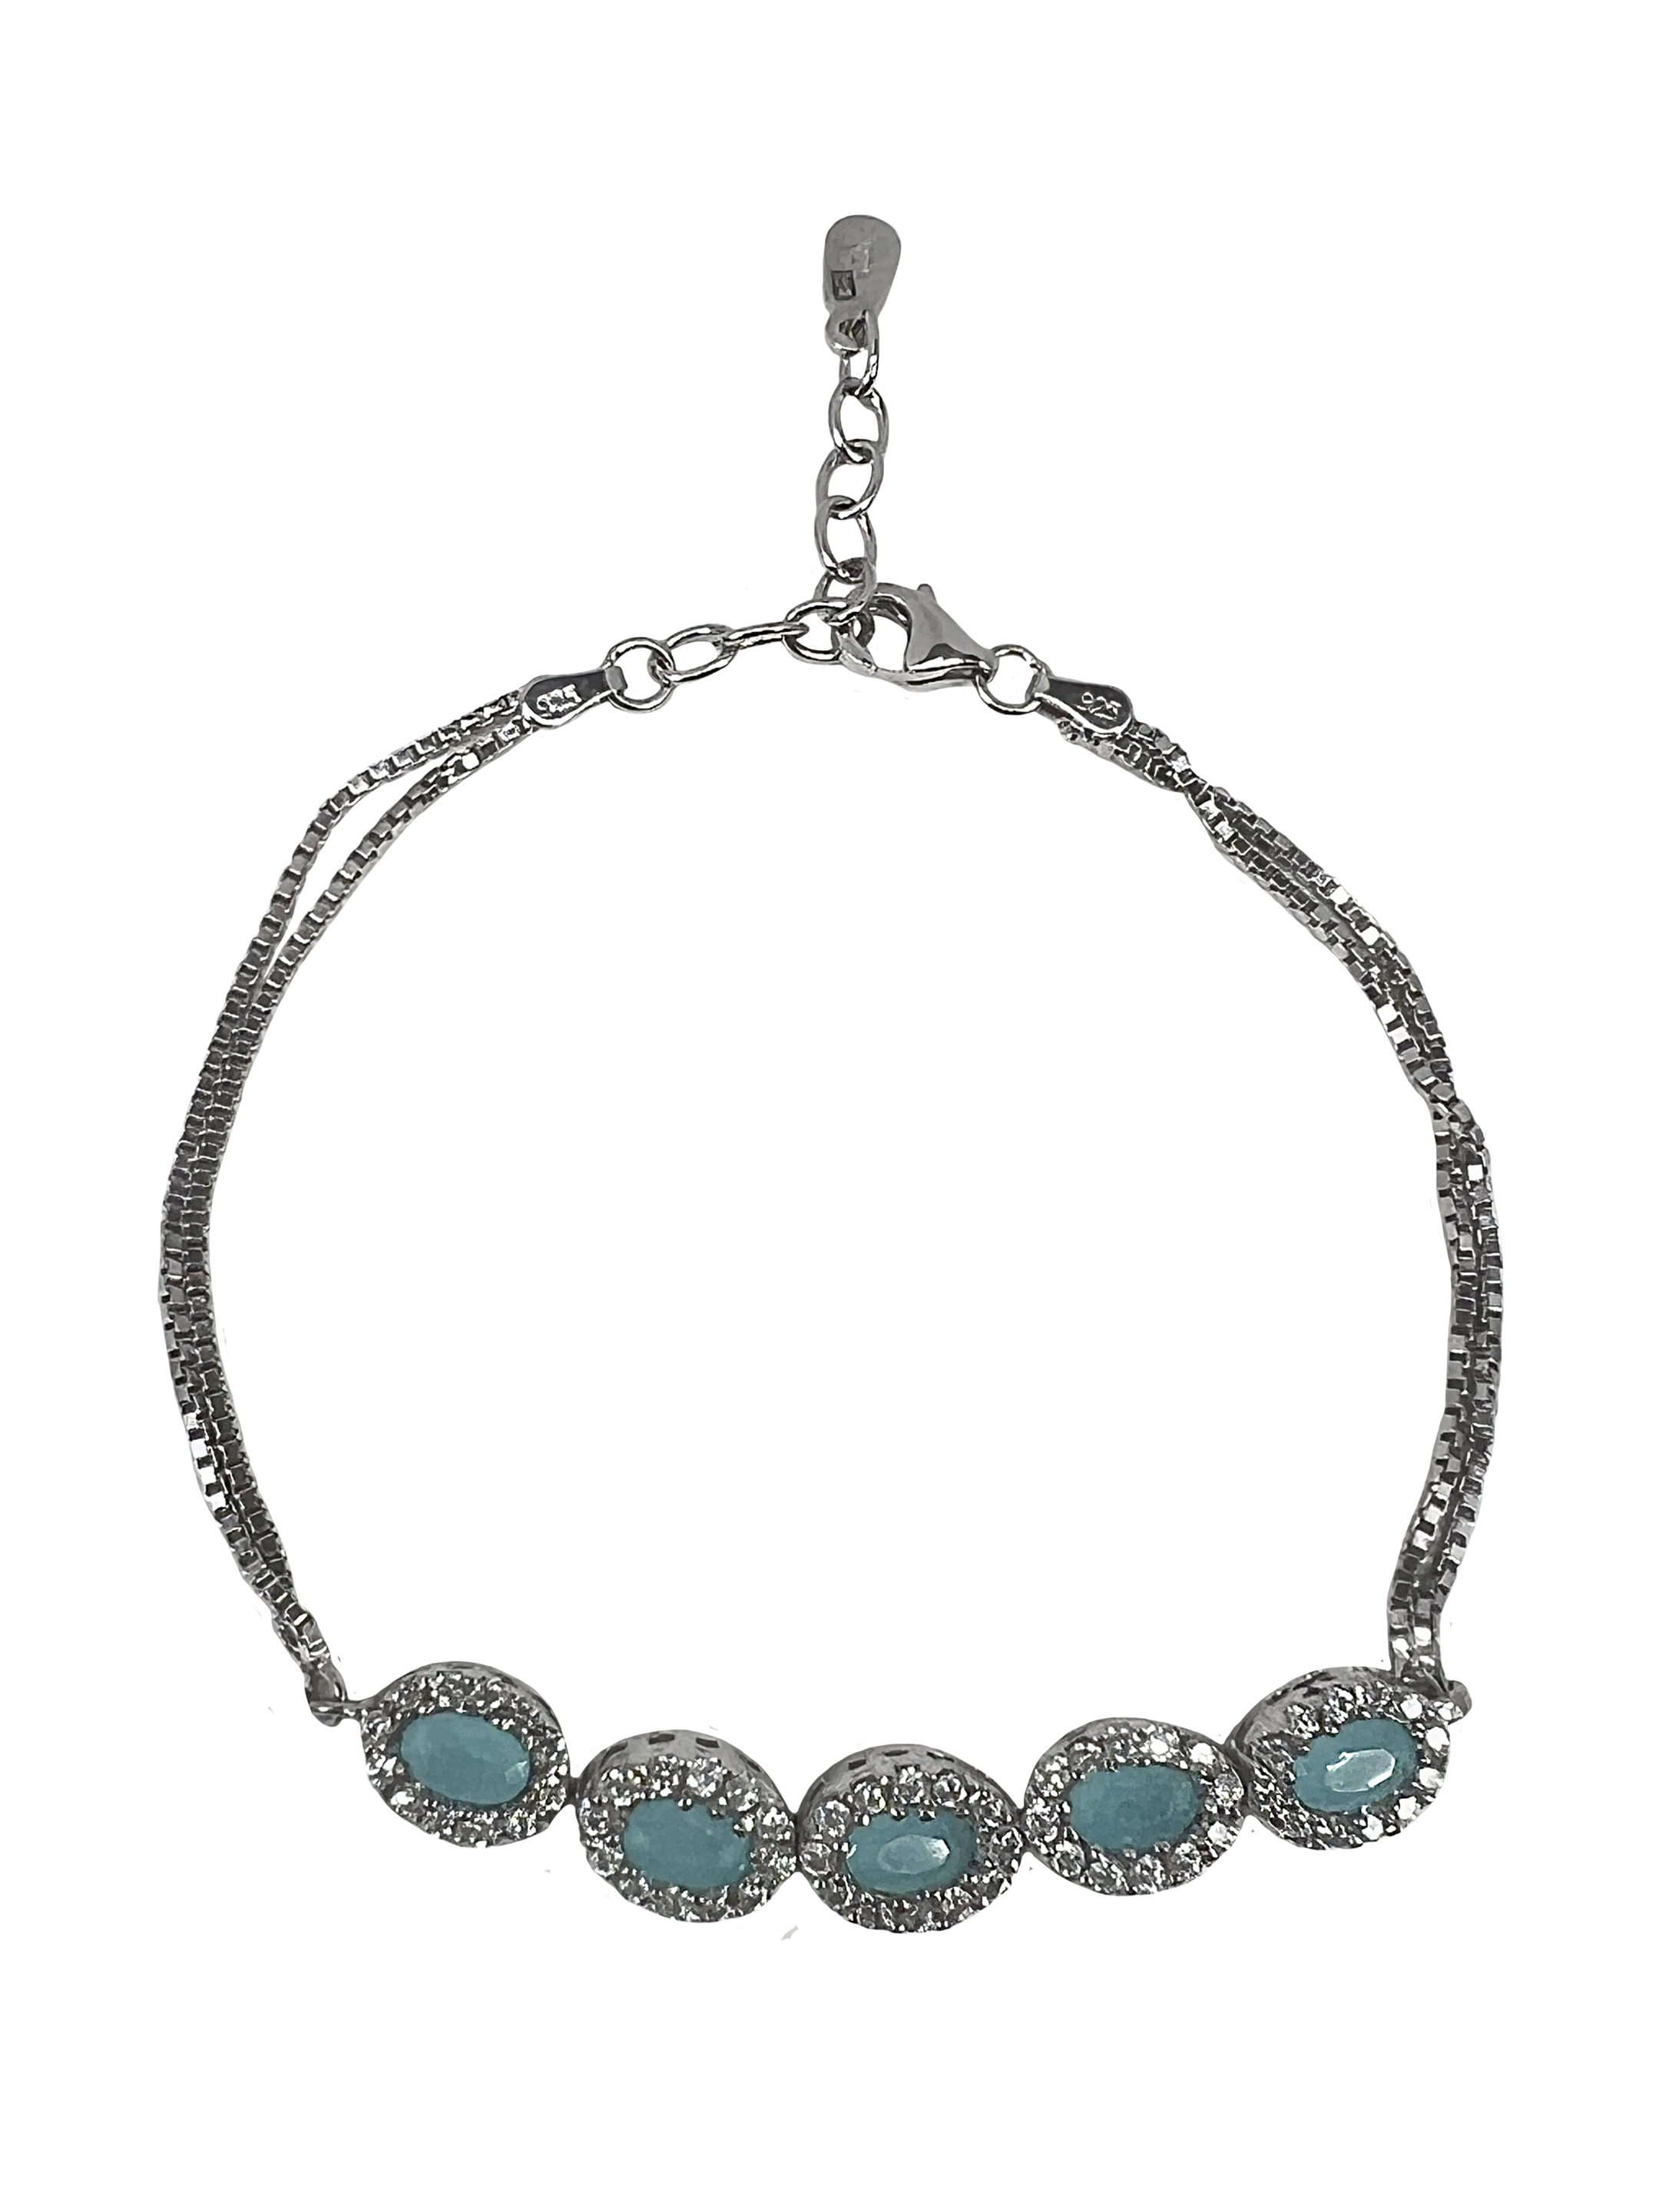 Bracelet en argent avec pierres turquoise et cristaux